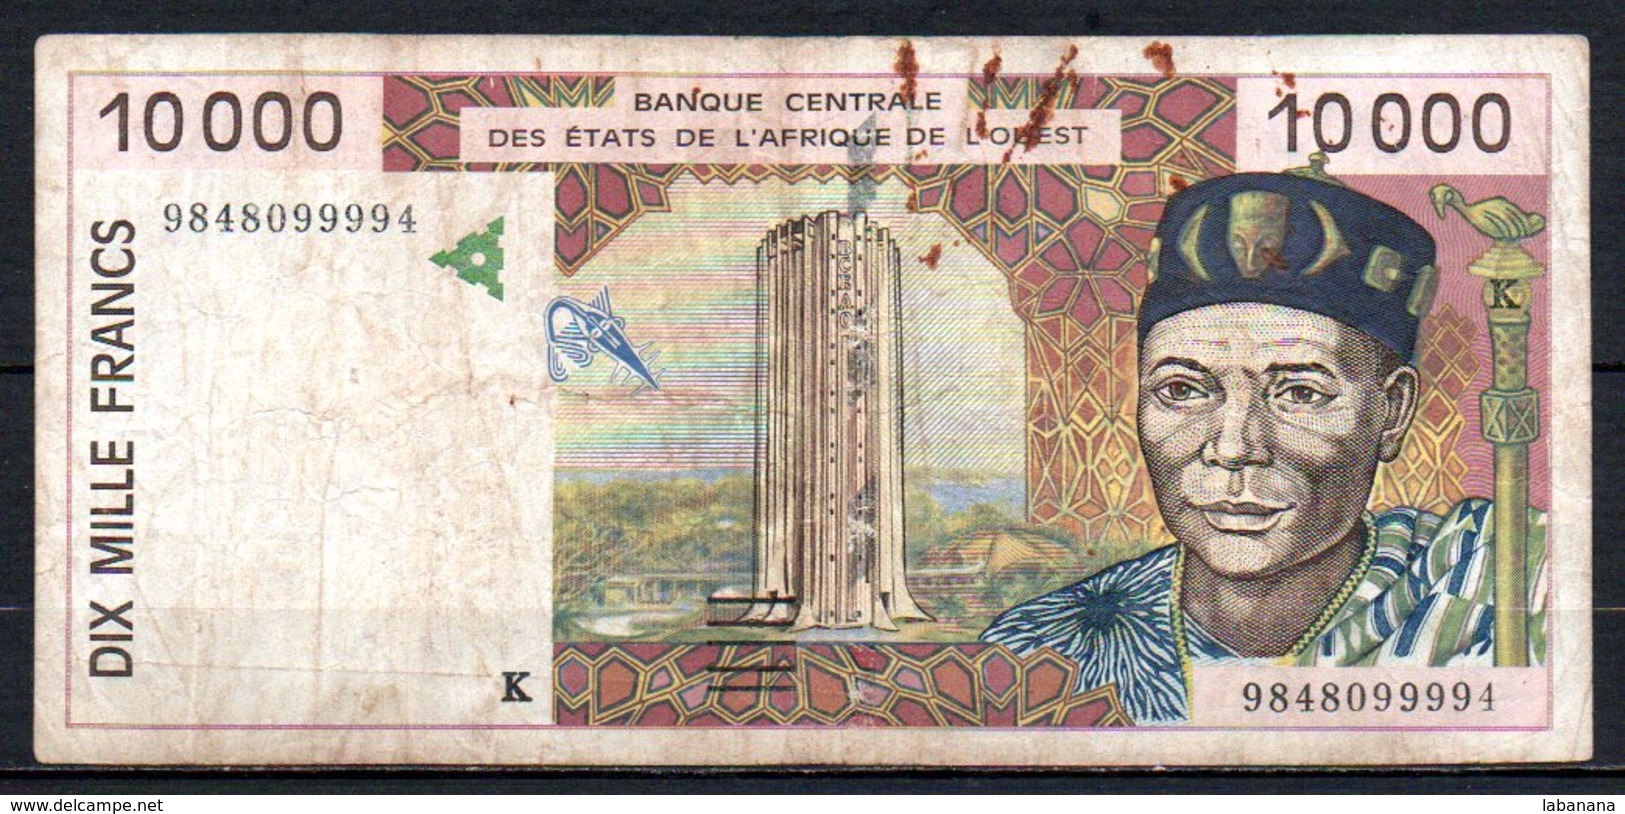 624-Sénégal Billet De 10 000 Francs 1998 K984 - Senegal